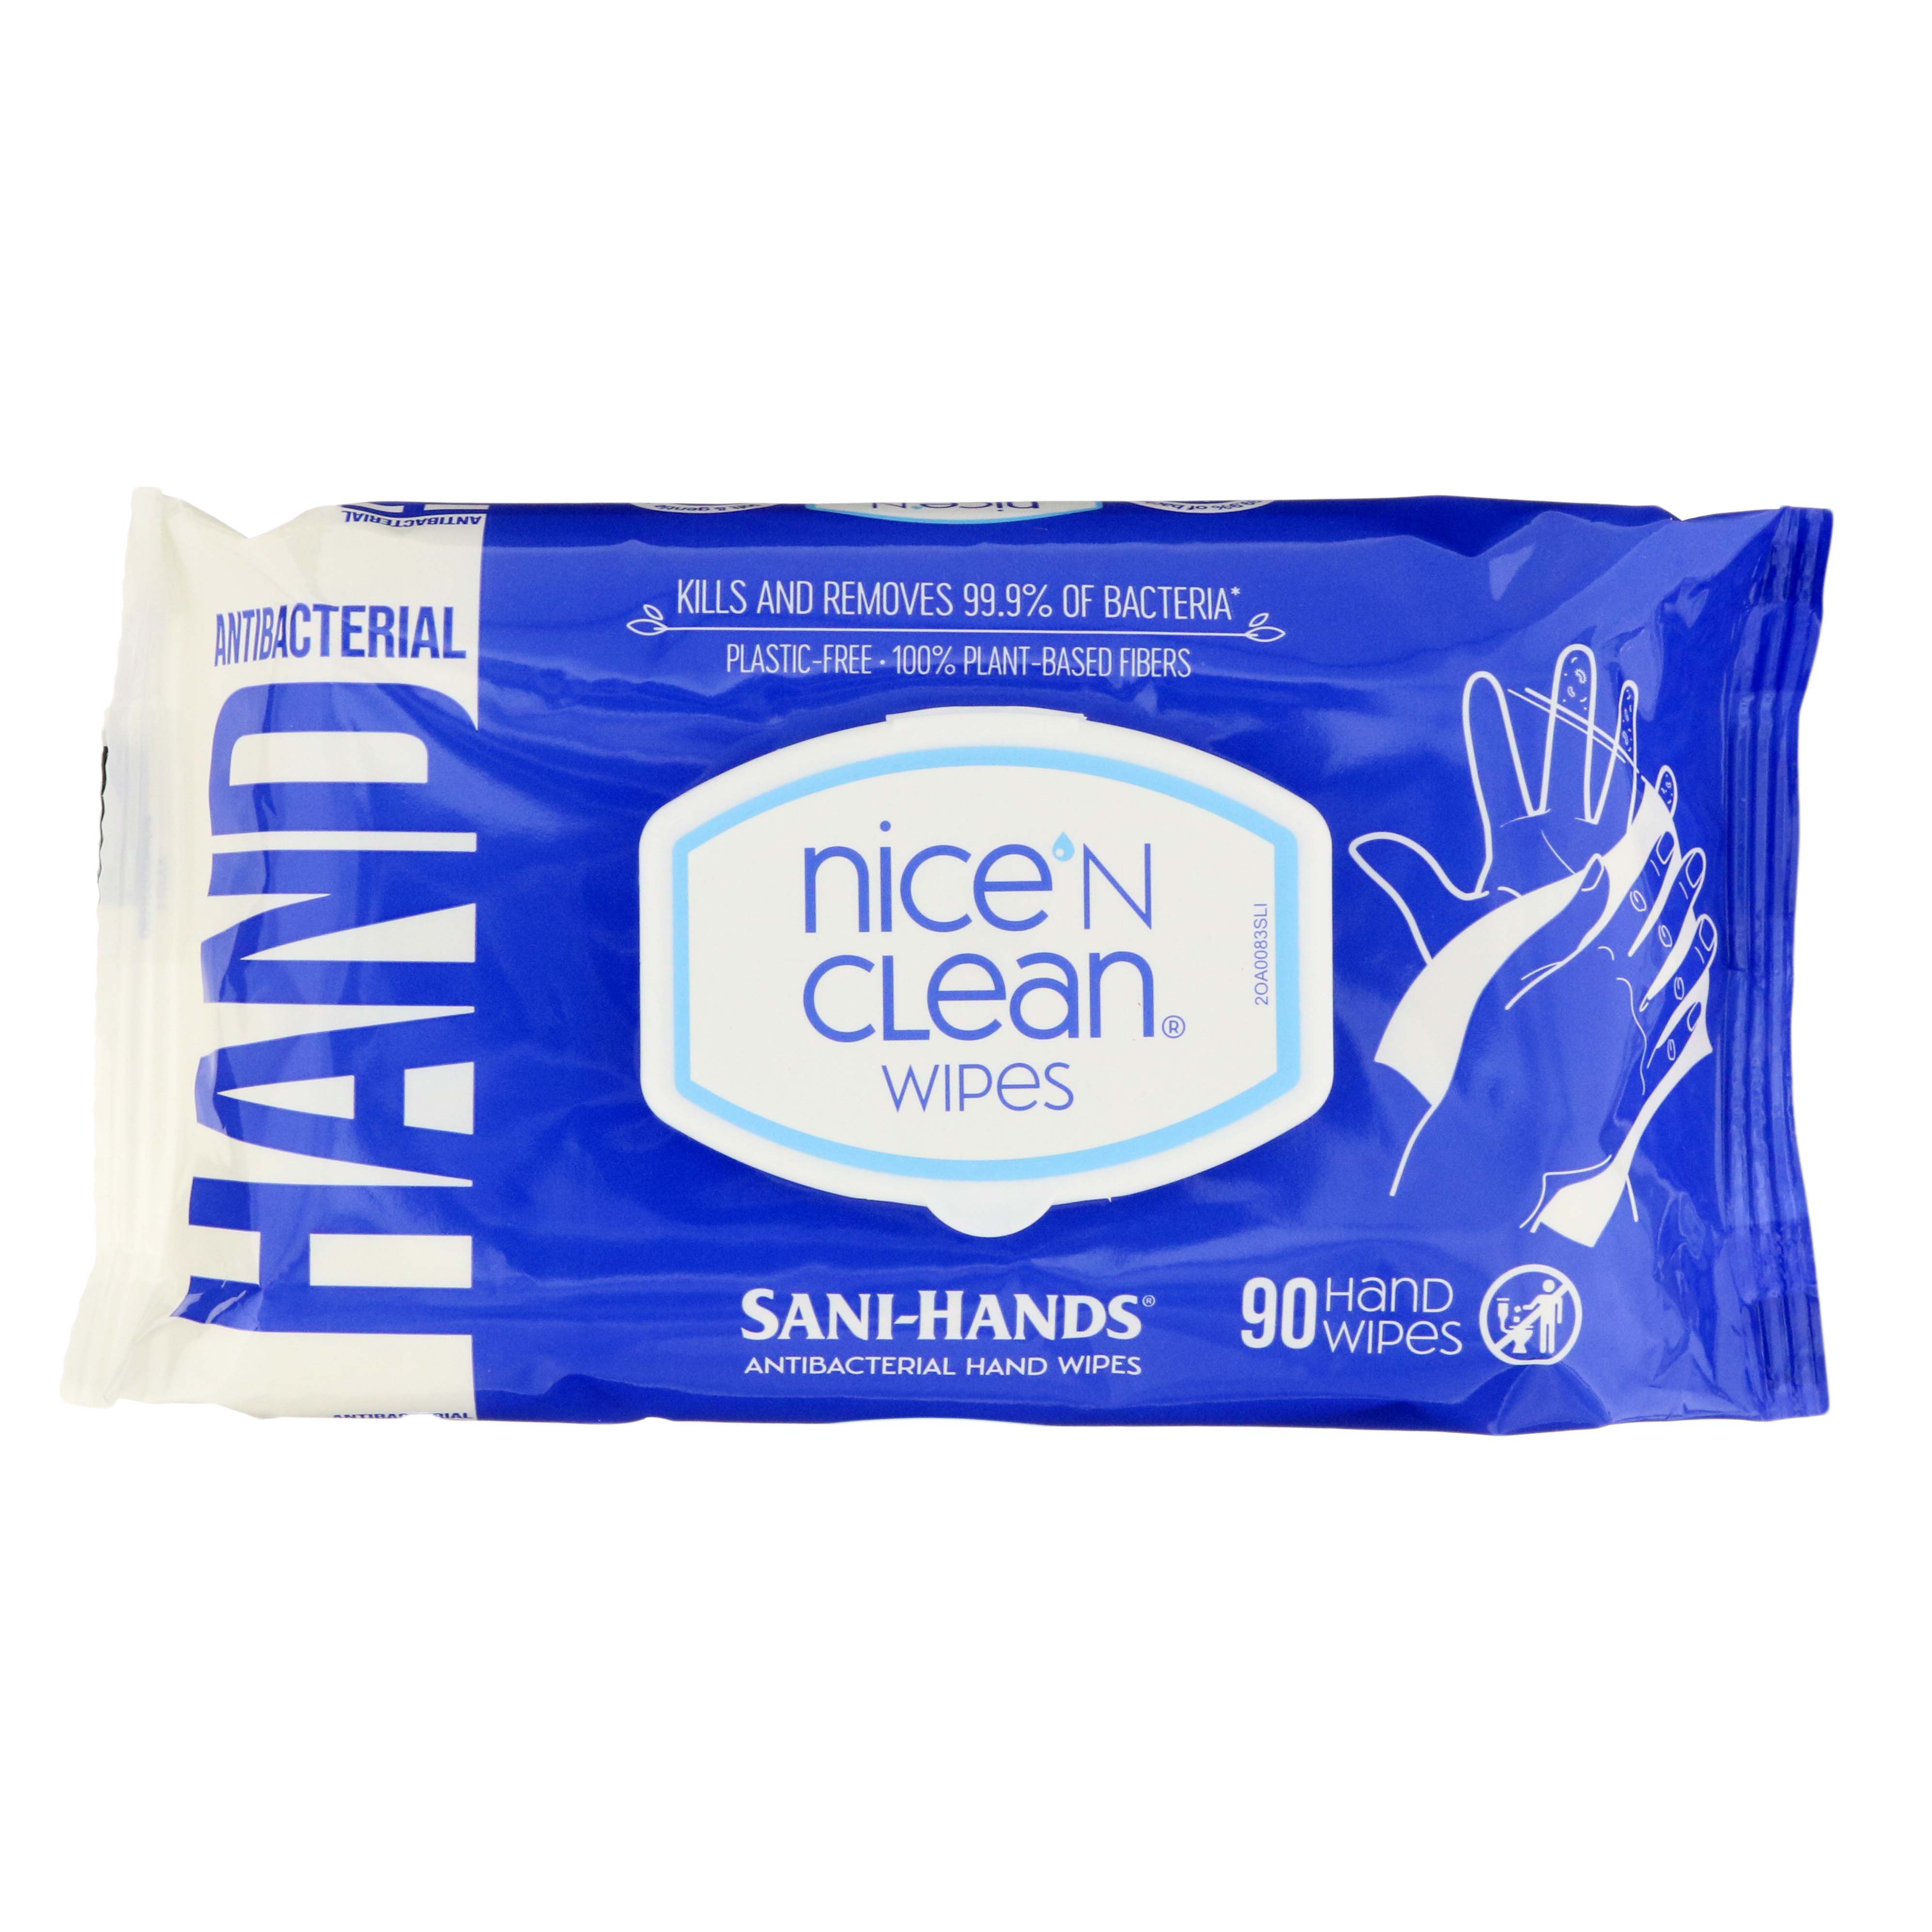 Nice 'N Clean Antibacterial Hand Wipes